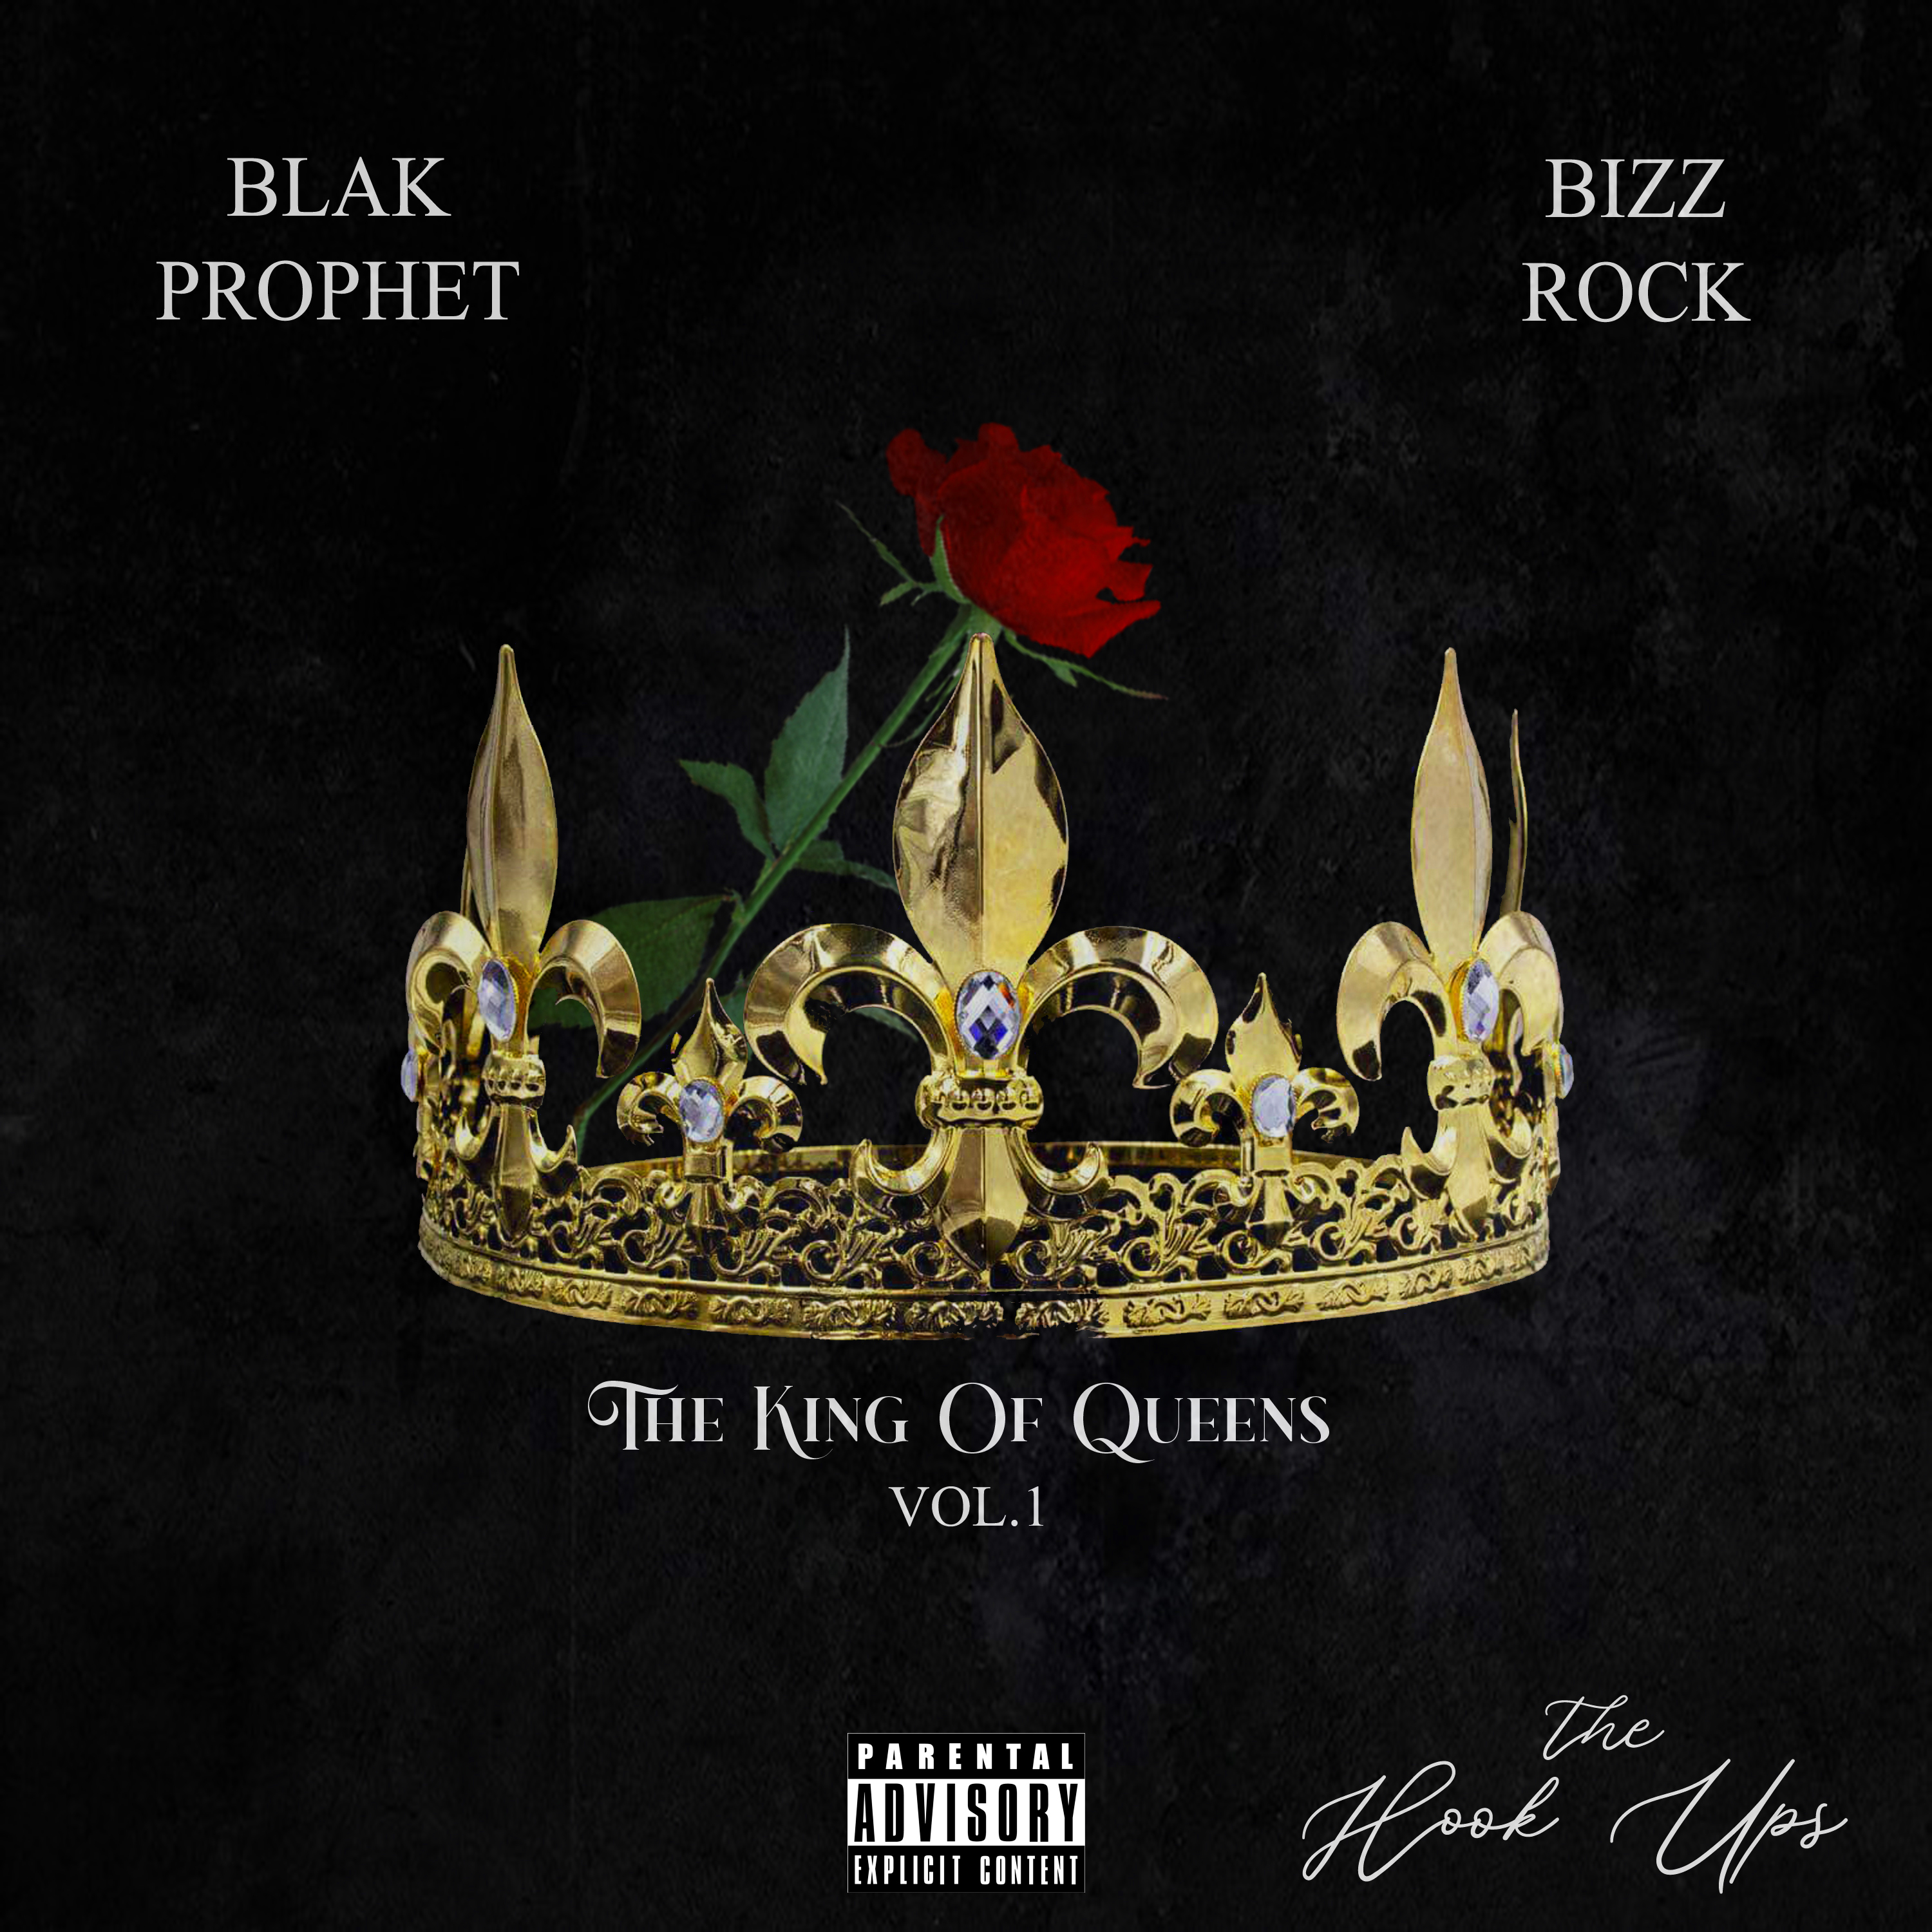 Art for Be My Bae by Blak Prophet & Bizz Rock